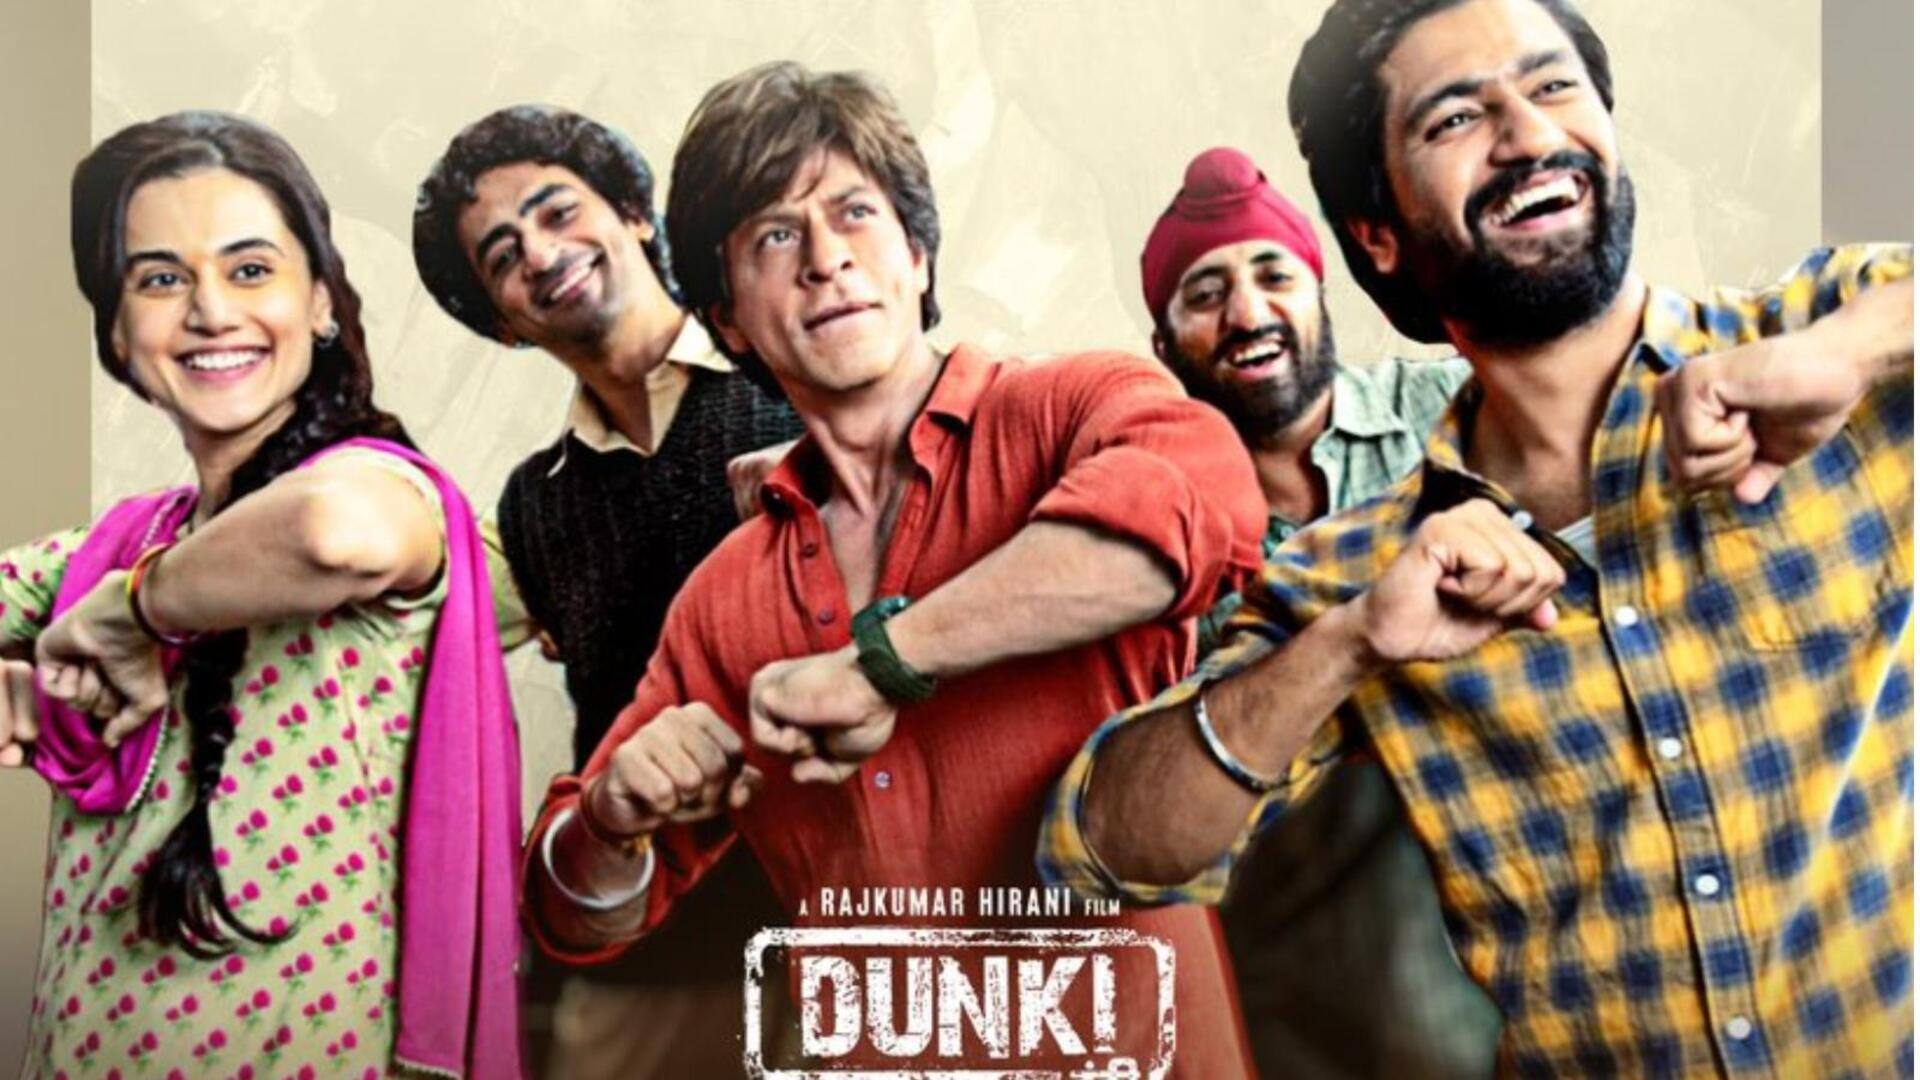 शाहरुख खान की फिल्म 'डंकी' ने दुनियाभर में किया 200 करोड़ रुपये का आंकड़ा पार